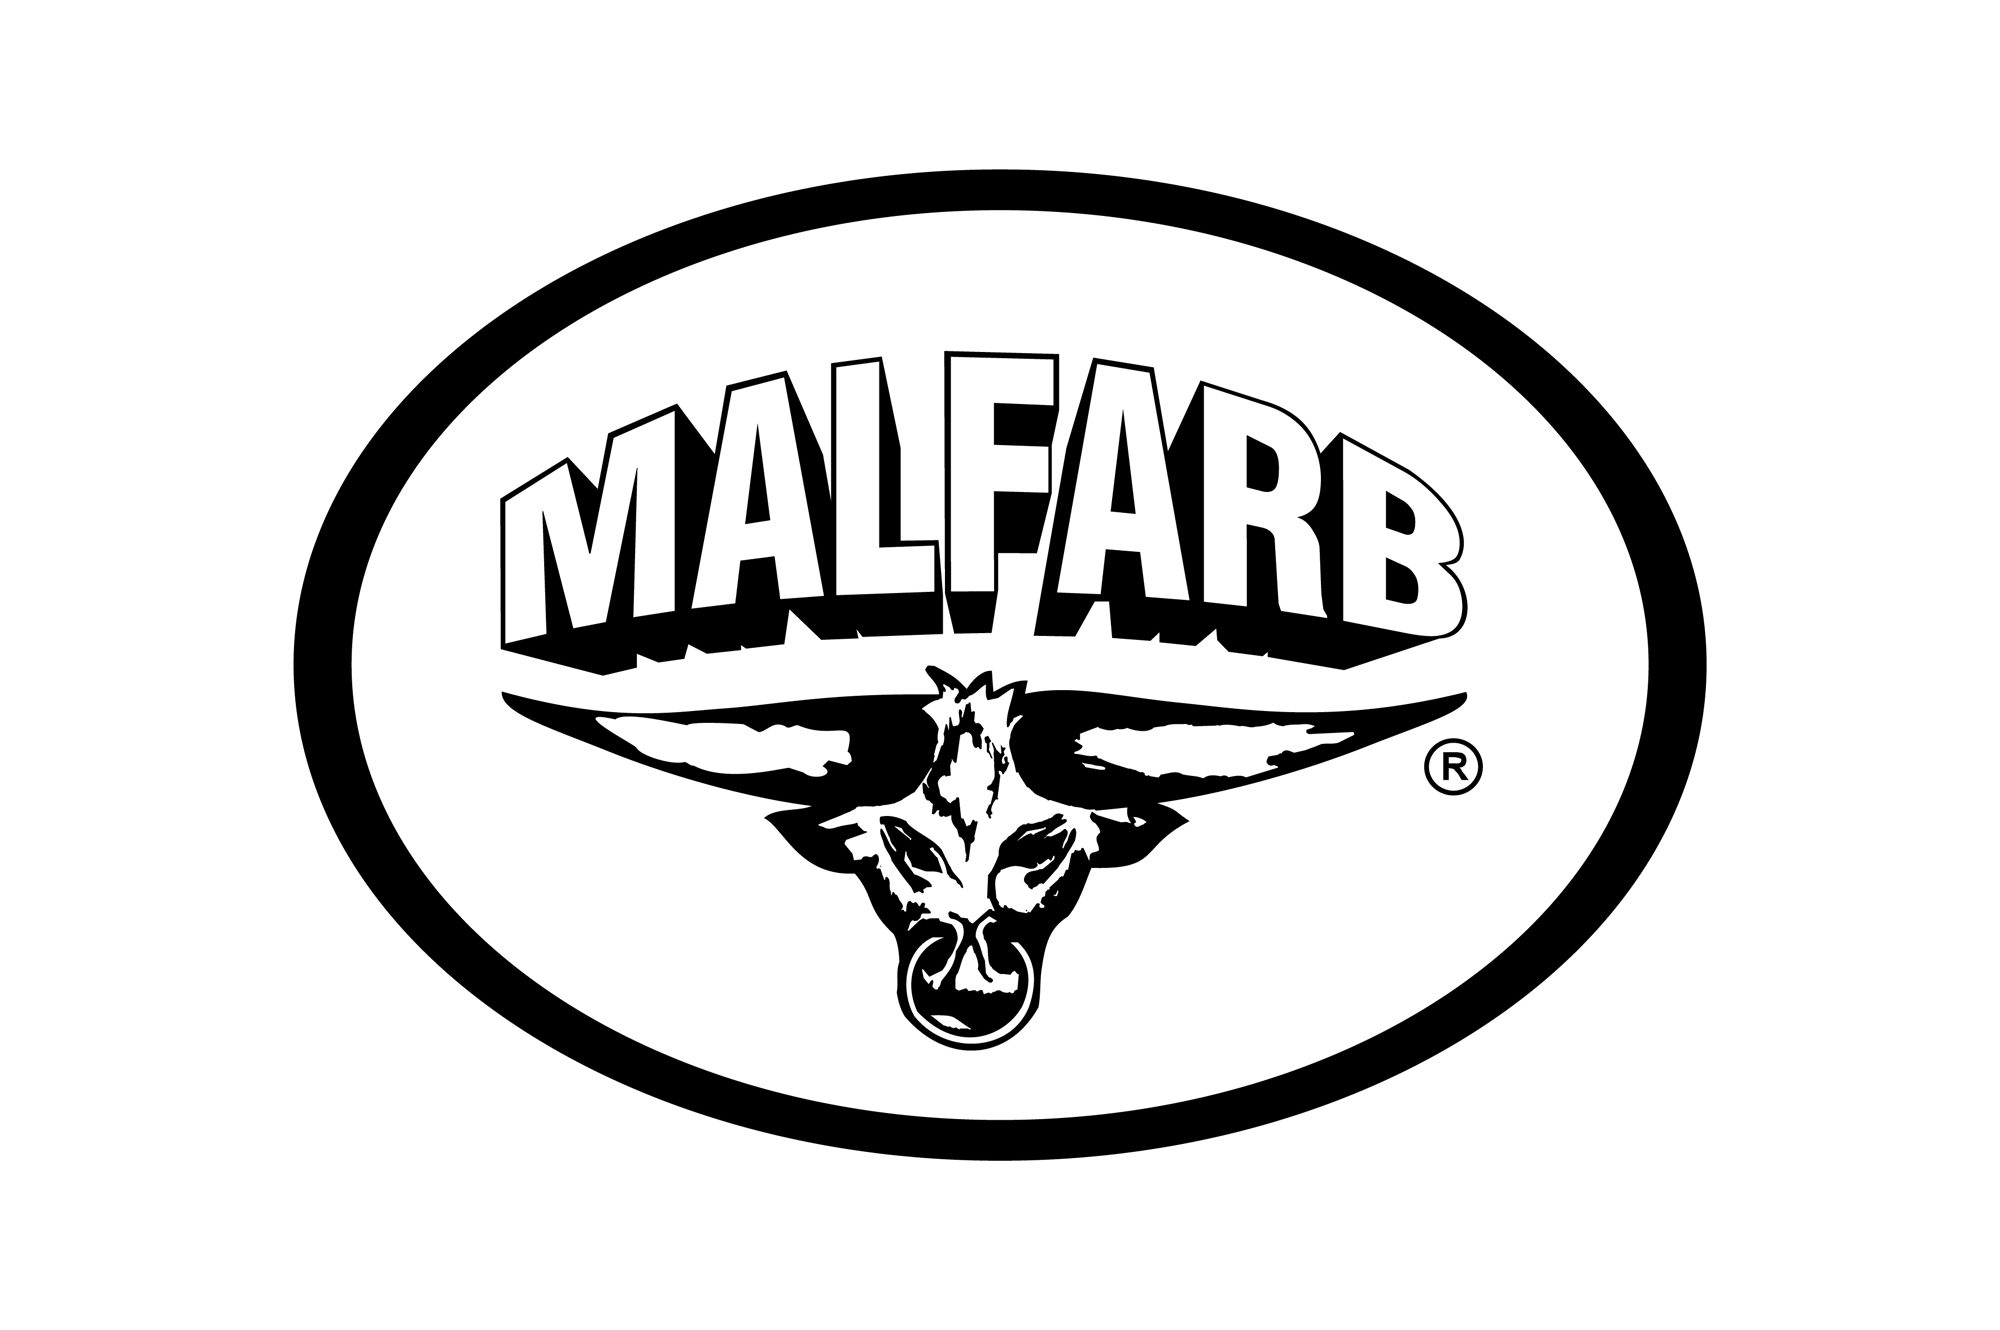 Malfarb - logo PLANSZA 30x30cm EDYCJA